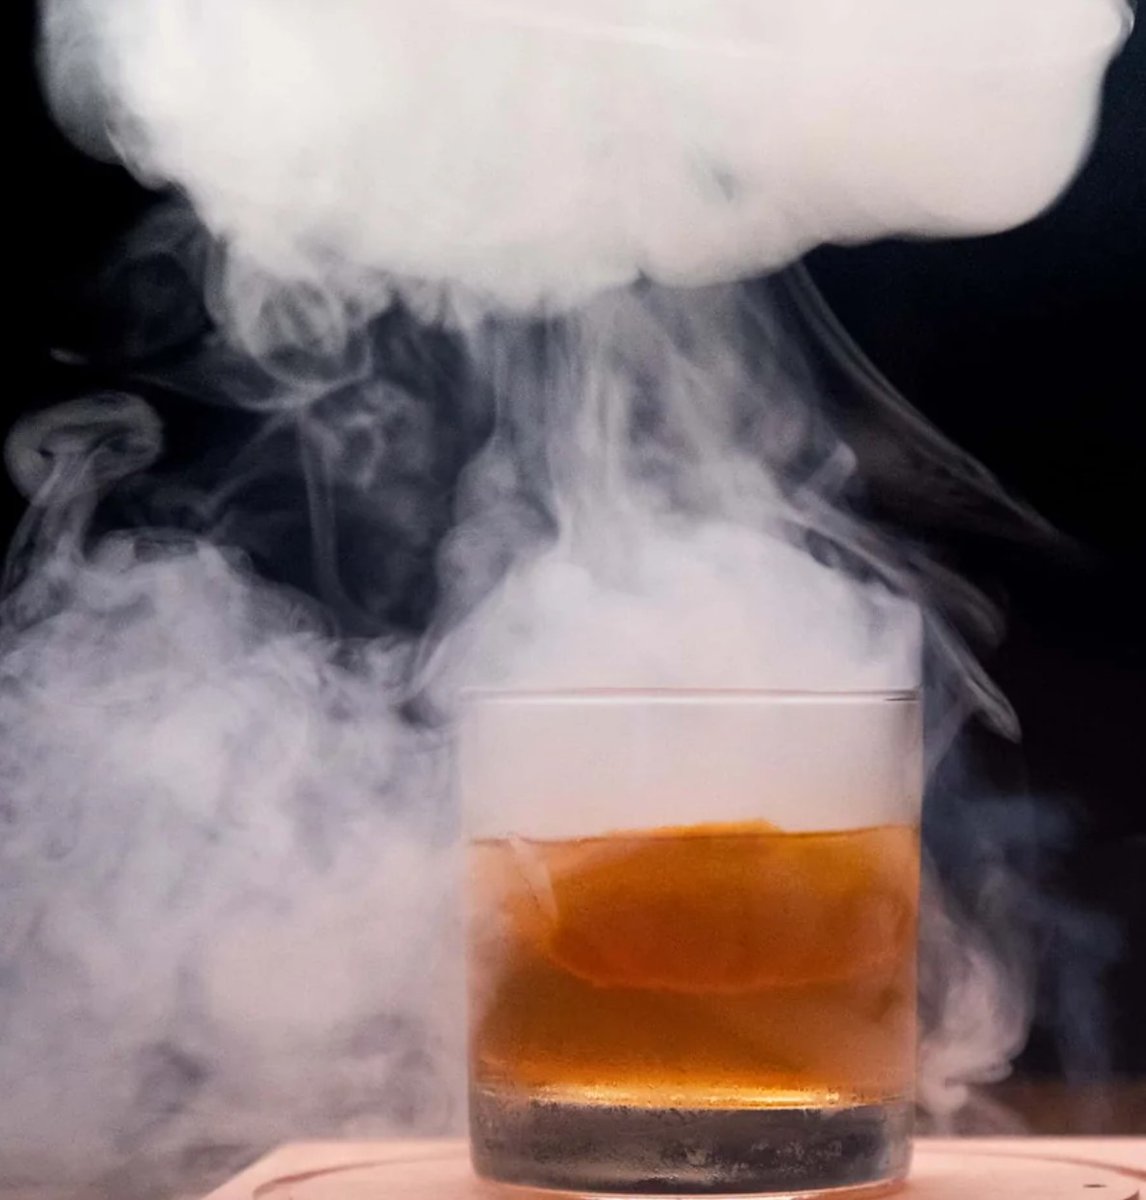 Smoked Irish Whiskey, stop and try one...☘